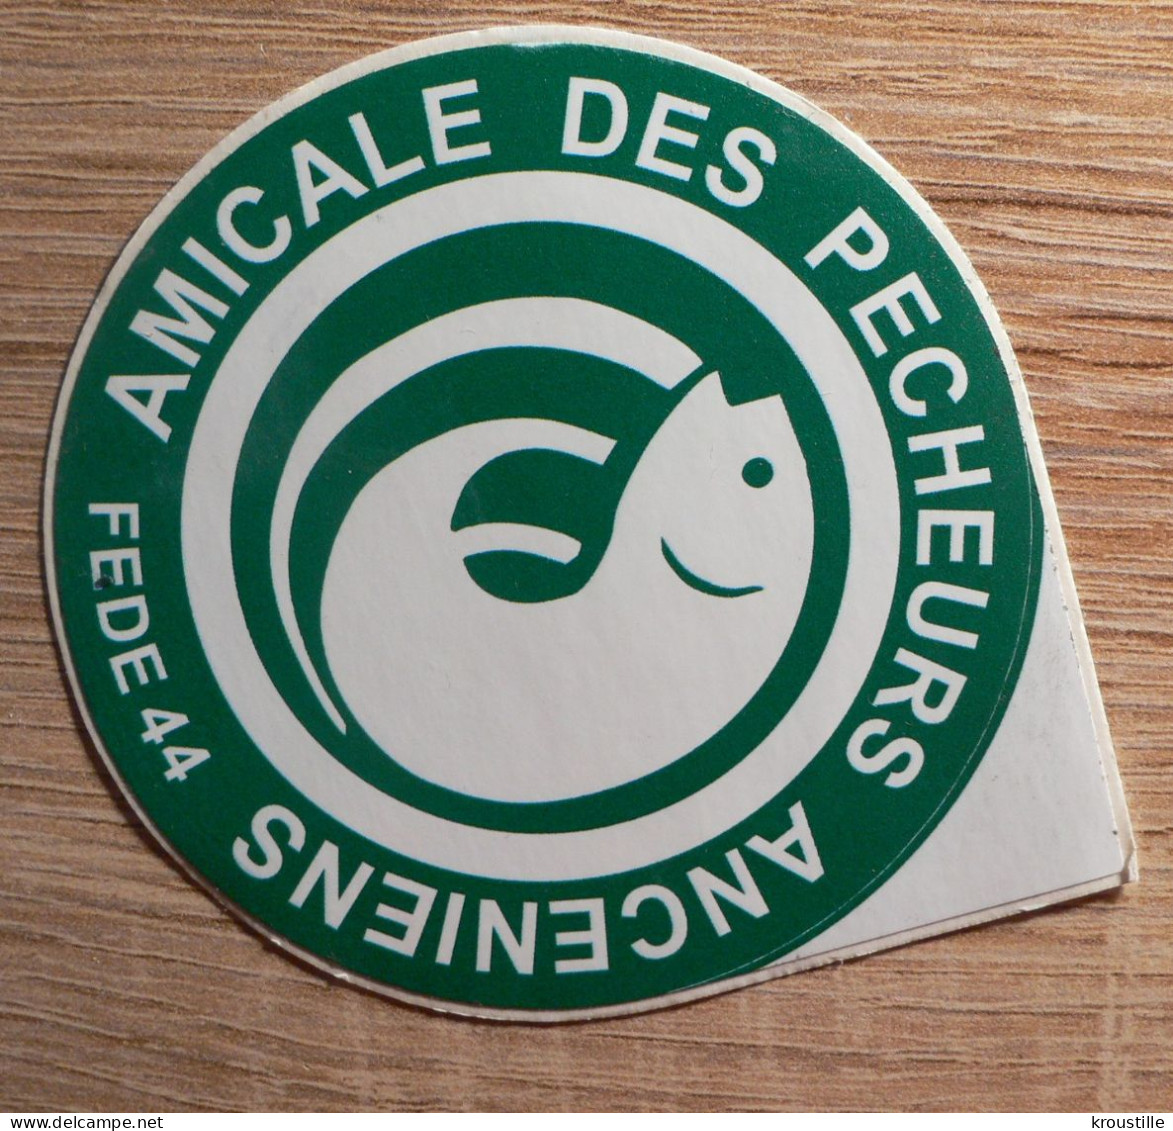 AUTOCOLLANT AMICALE DES PECHEURS ANCENIENS - Stickers